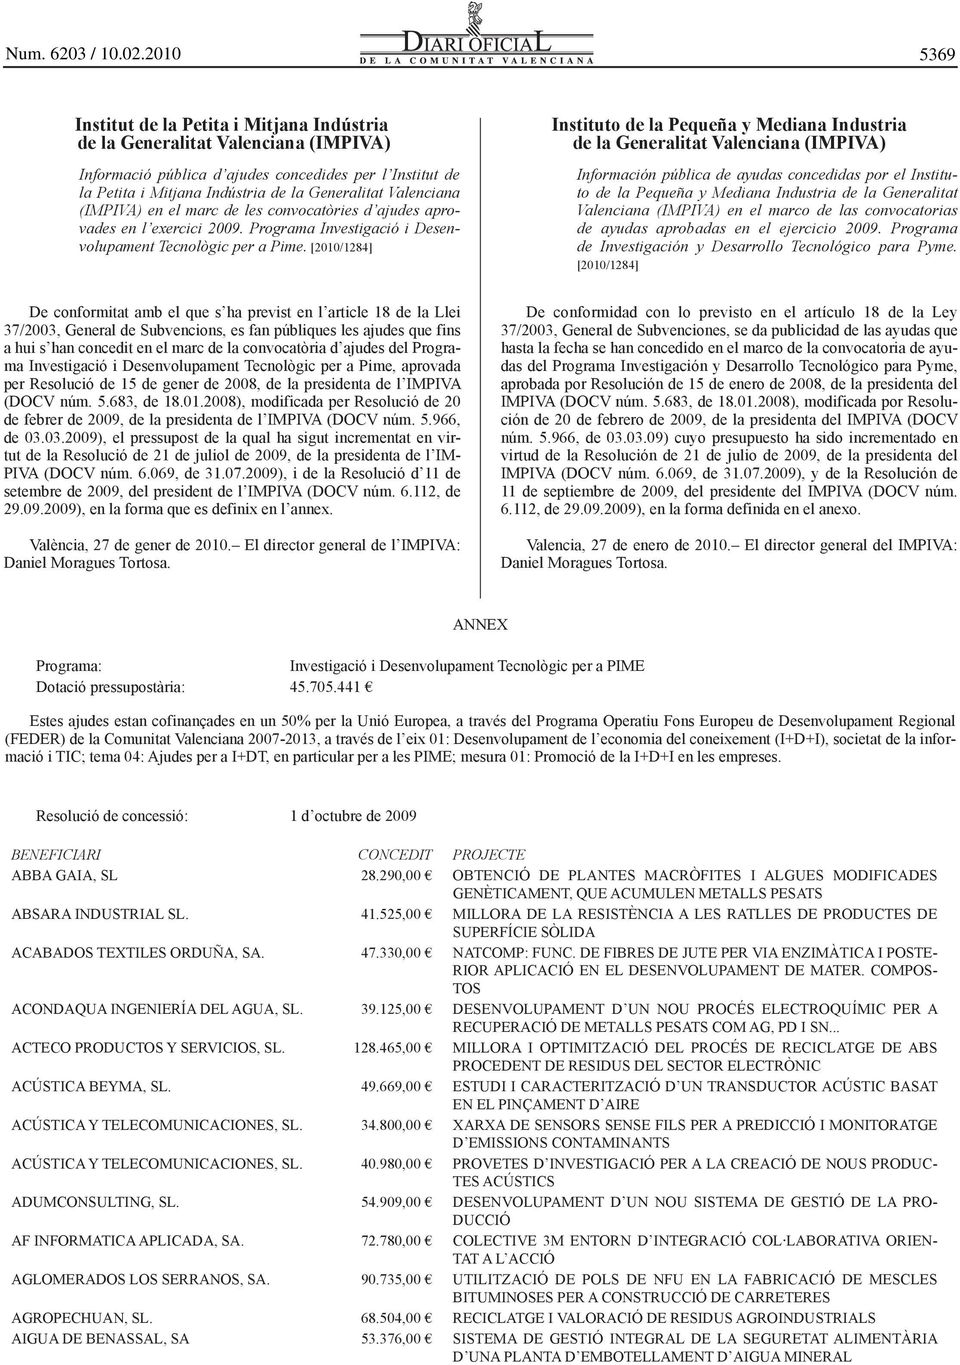 [2010/1284] Instituto de la Pequeña y Mediana Industria de la Generalitat Valenciana (IMPIVA) Información pública de ayudas concedidas por el Instituto de la Pequeña y Mediana Industria de la